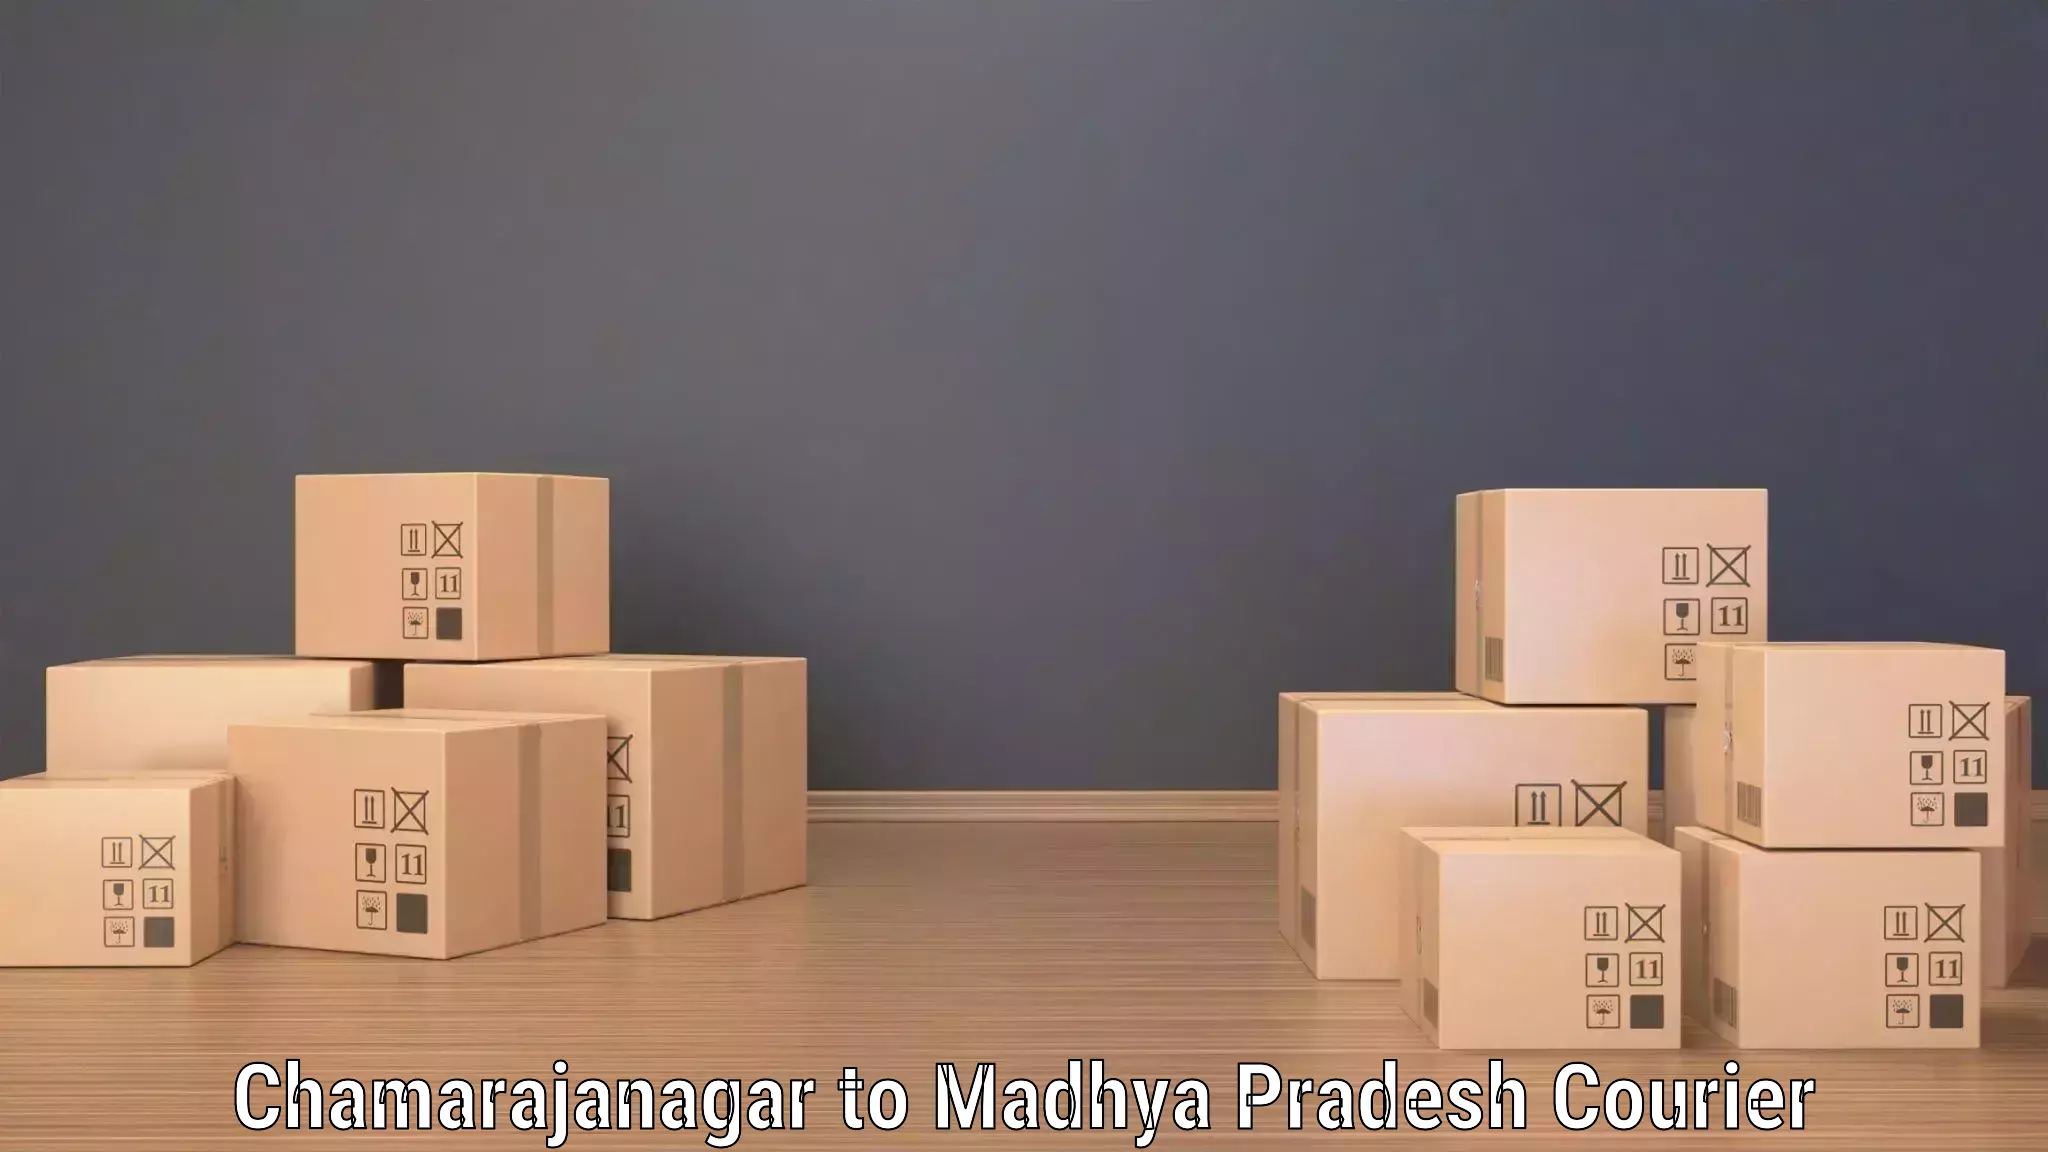 Express delivery capabilities Chamarajanagar to Jhabua